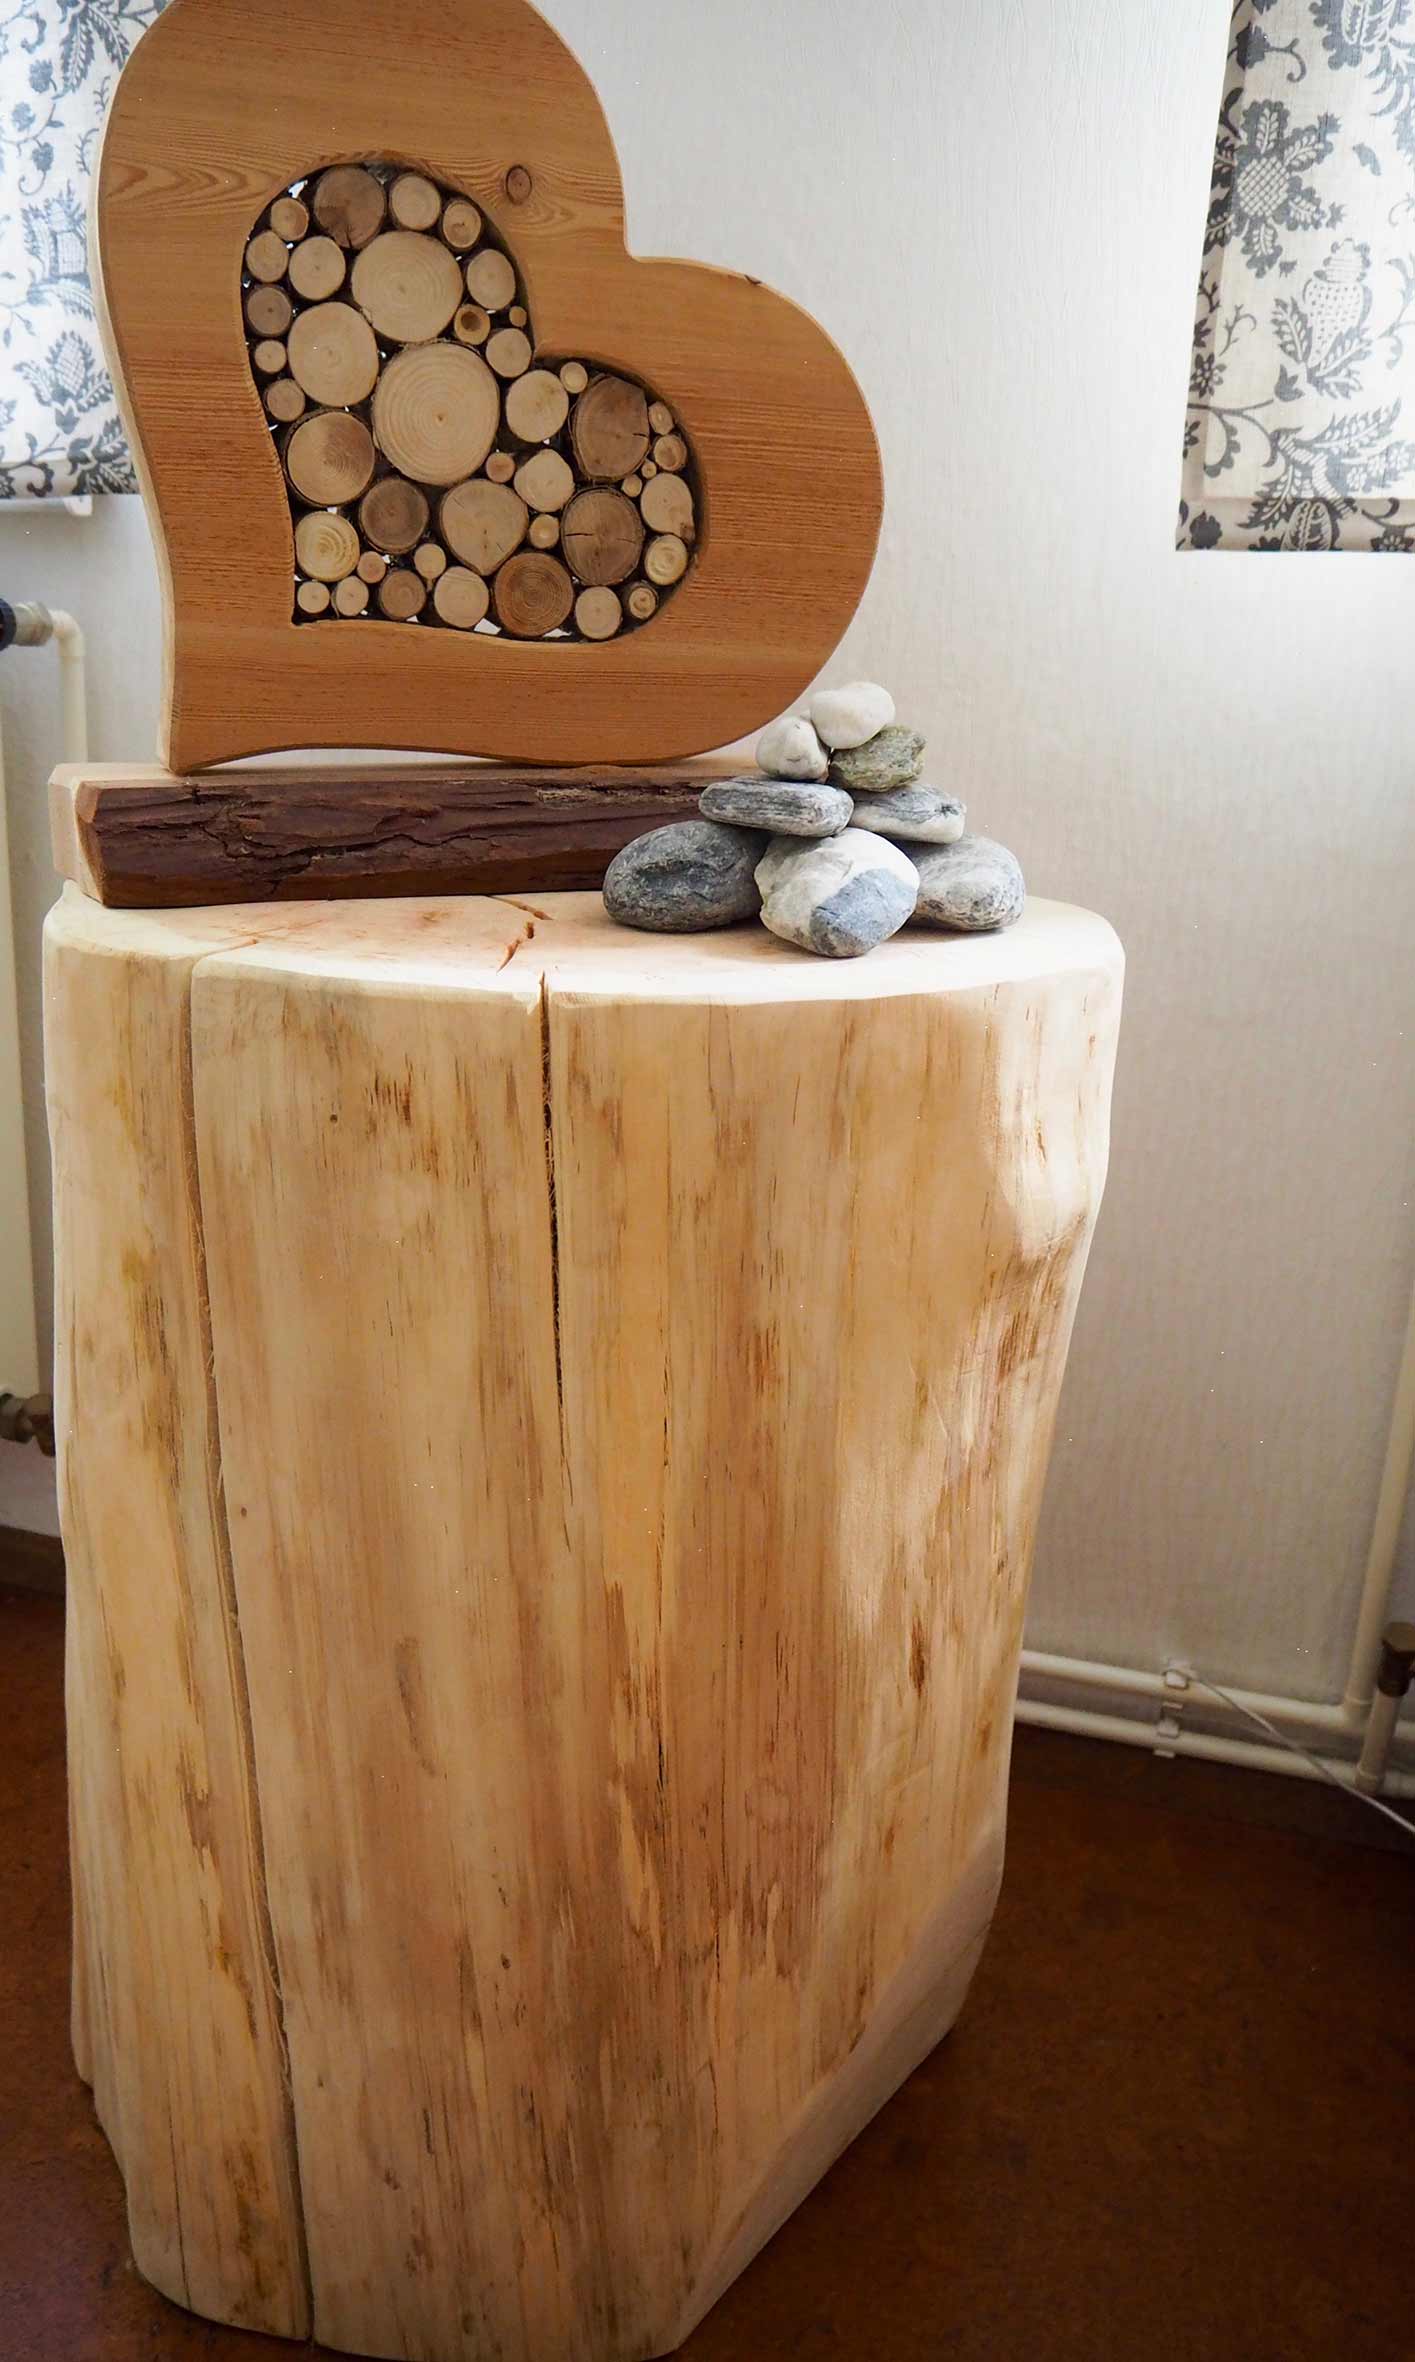 Dekoration aus Holz Holz-Deko | Tischlerei Holz Beck in Apolda